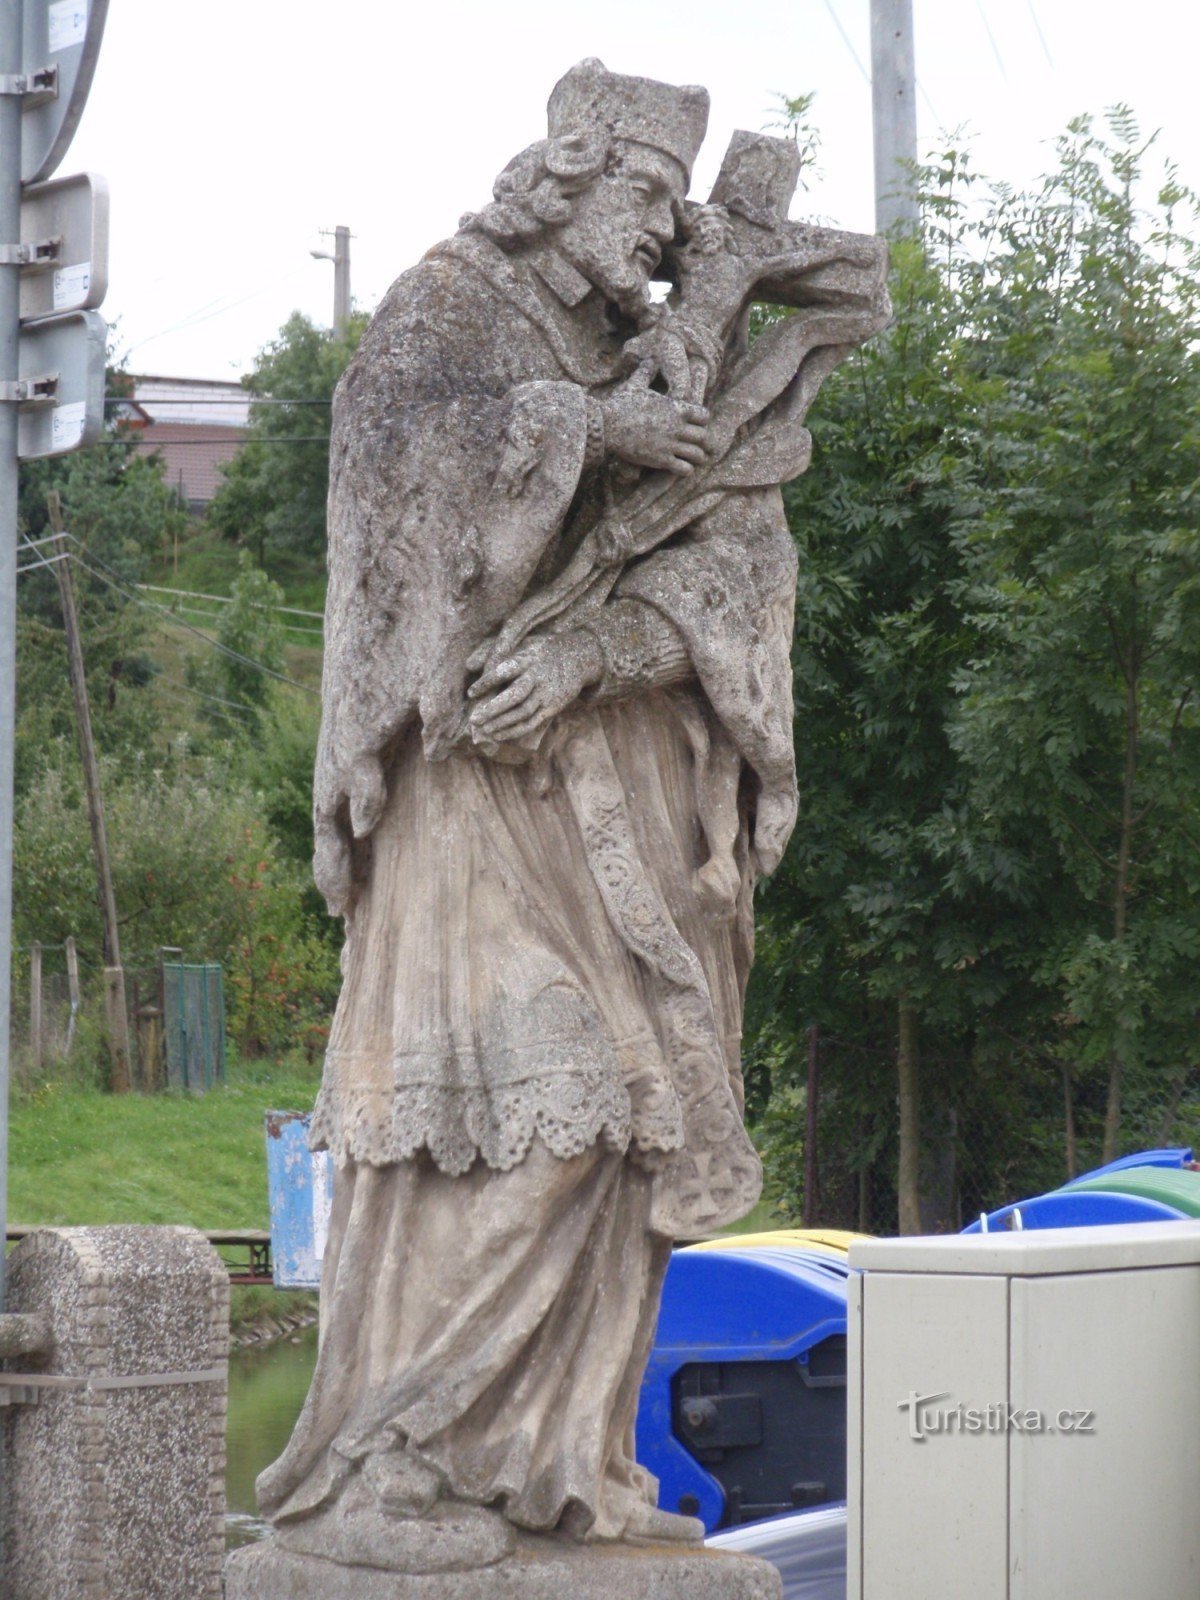 Öreg ember - Szent szobor. Jan Nepomucký